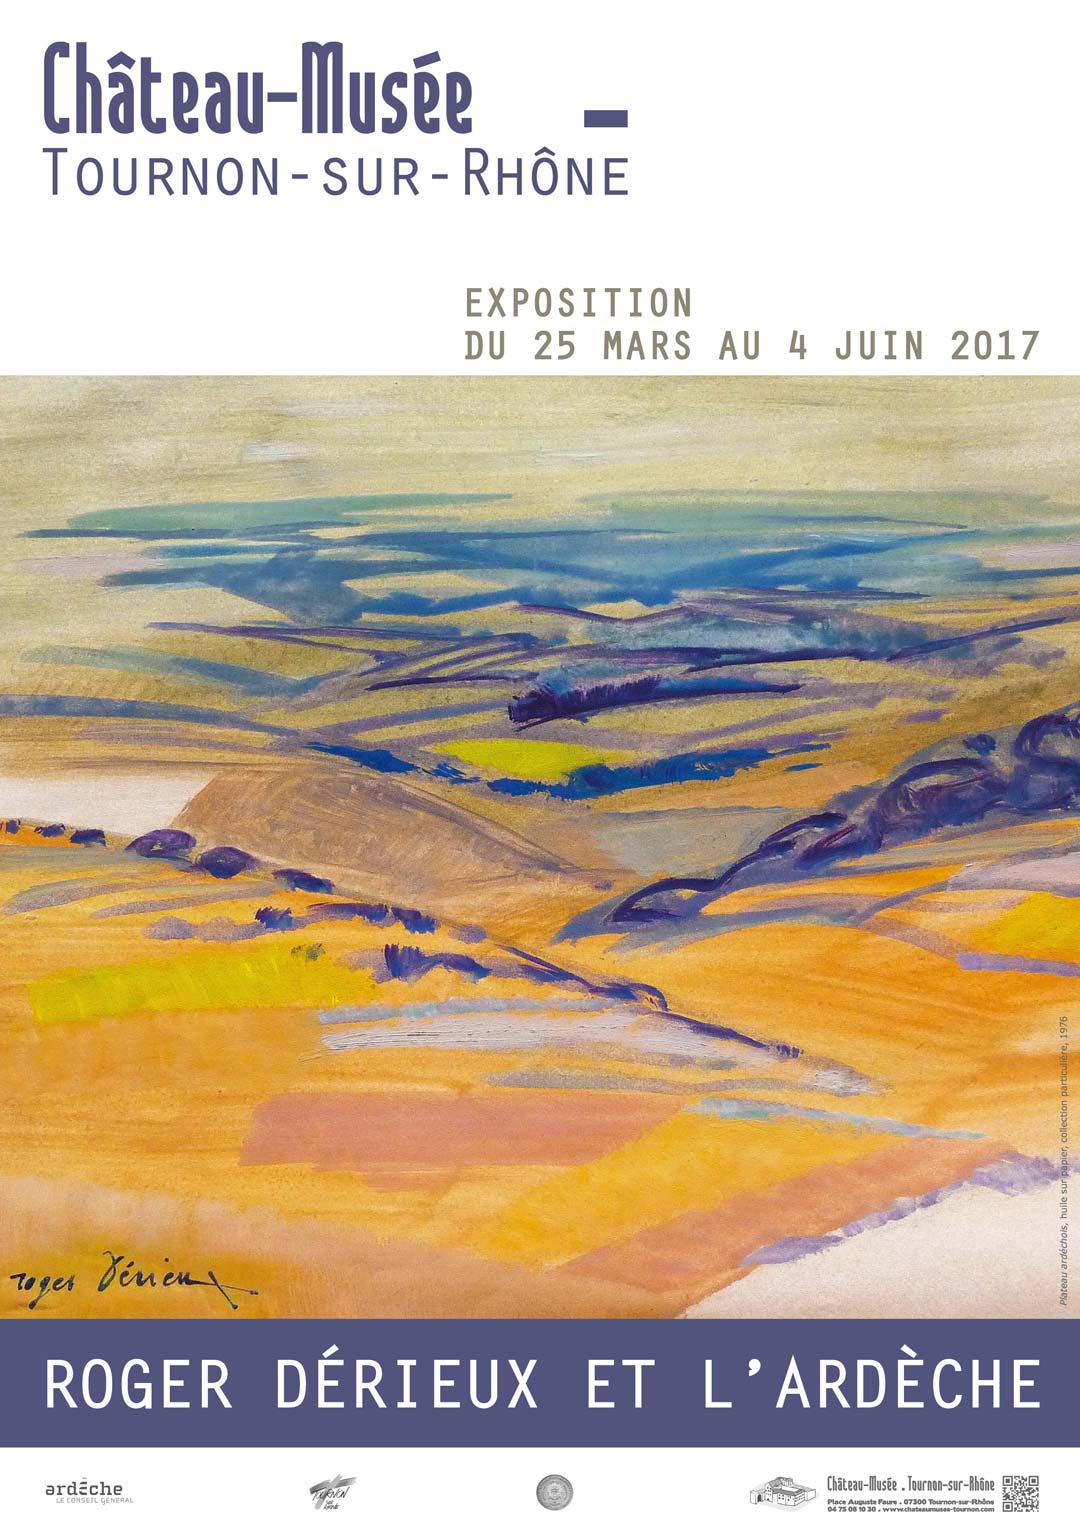 Exposition : ROGER DÉRIEUX ET L'ARDÈCHE. Du 25 mars au 4 juin 2017 au Château-Musée de Tournon-sur-Rhône.